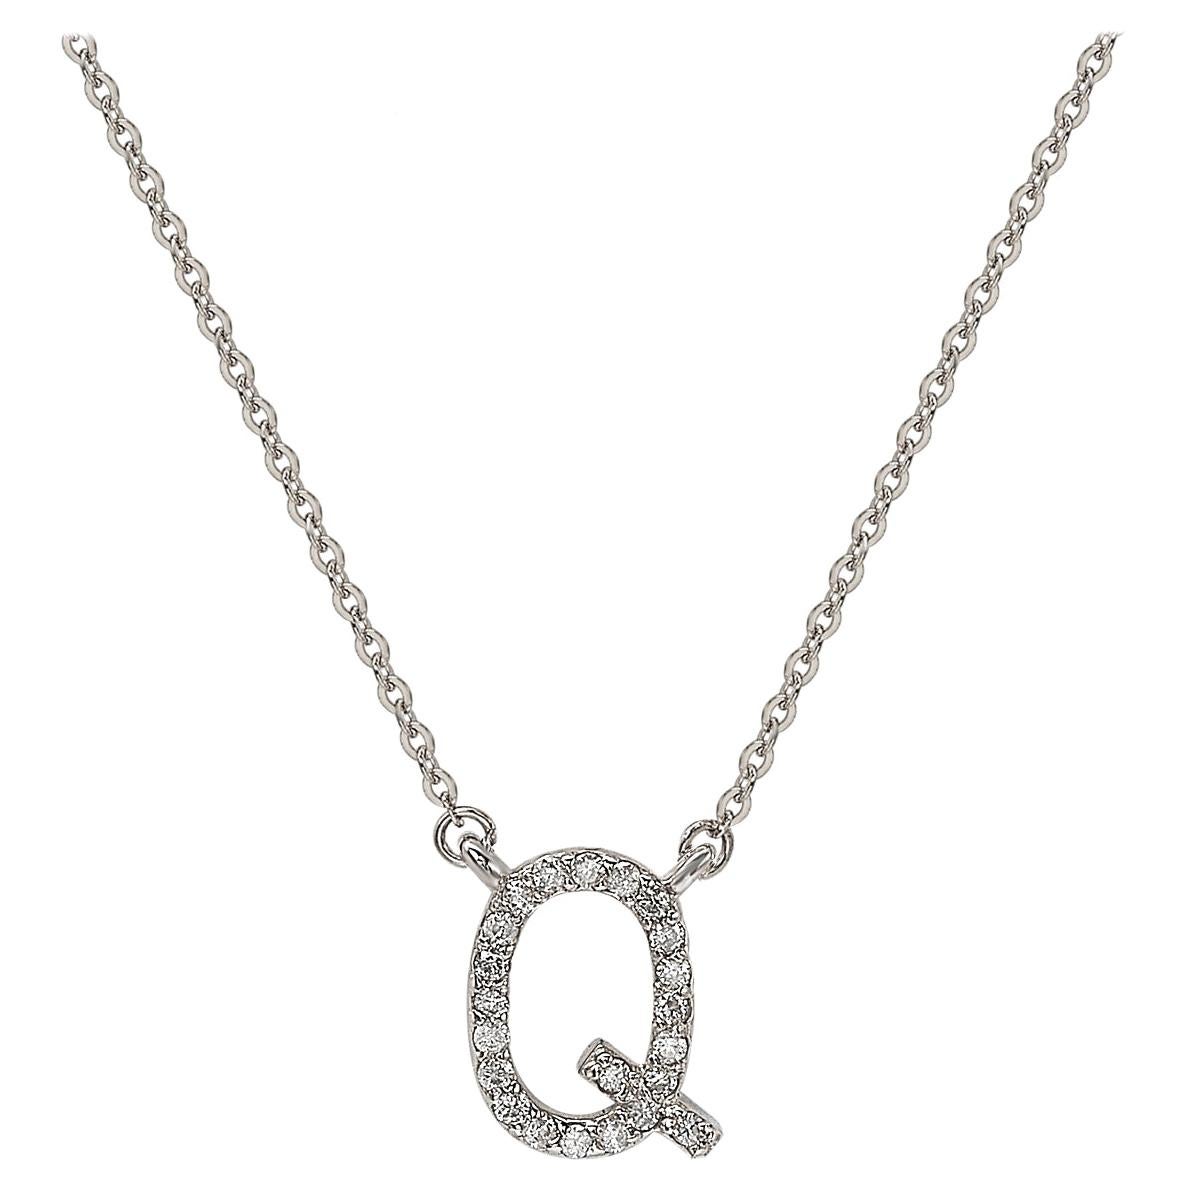  Suzy Levian, collana con iniziali di lettere in oro bianco 14K e diamanti bianchi da 0,10 carati, Q